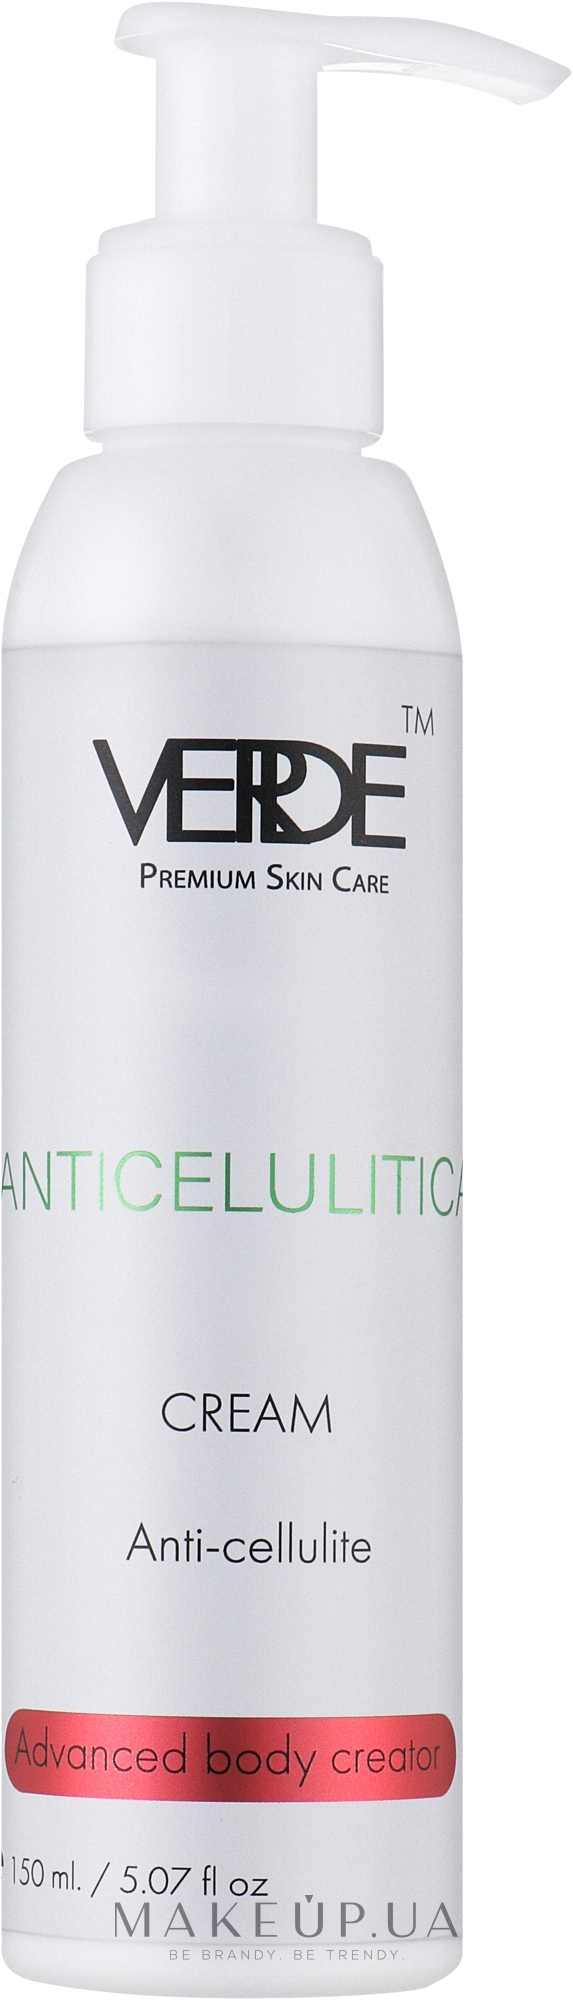 Антицеллюлитный крем для идеального силуэта - Verde Anti-Cellulite Cream — фото 150ml